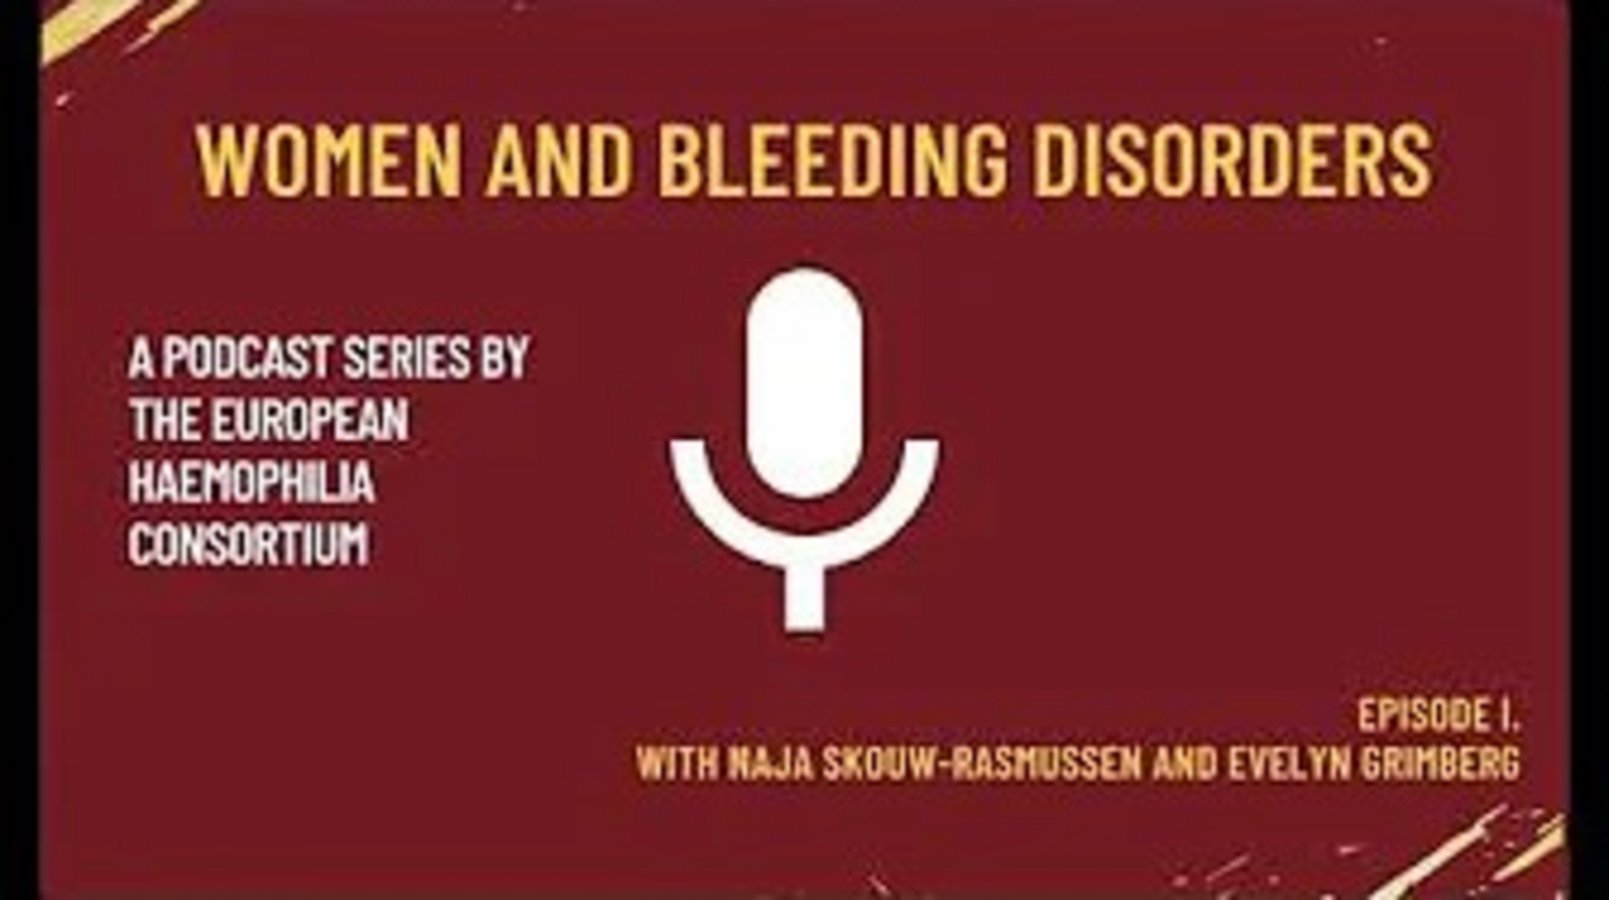 Women_and_bleeding_disorders_podcast.jpg